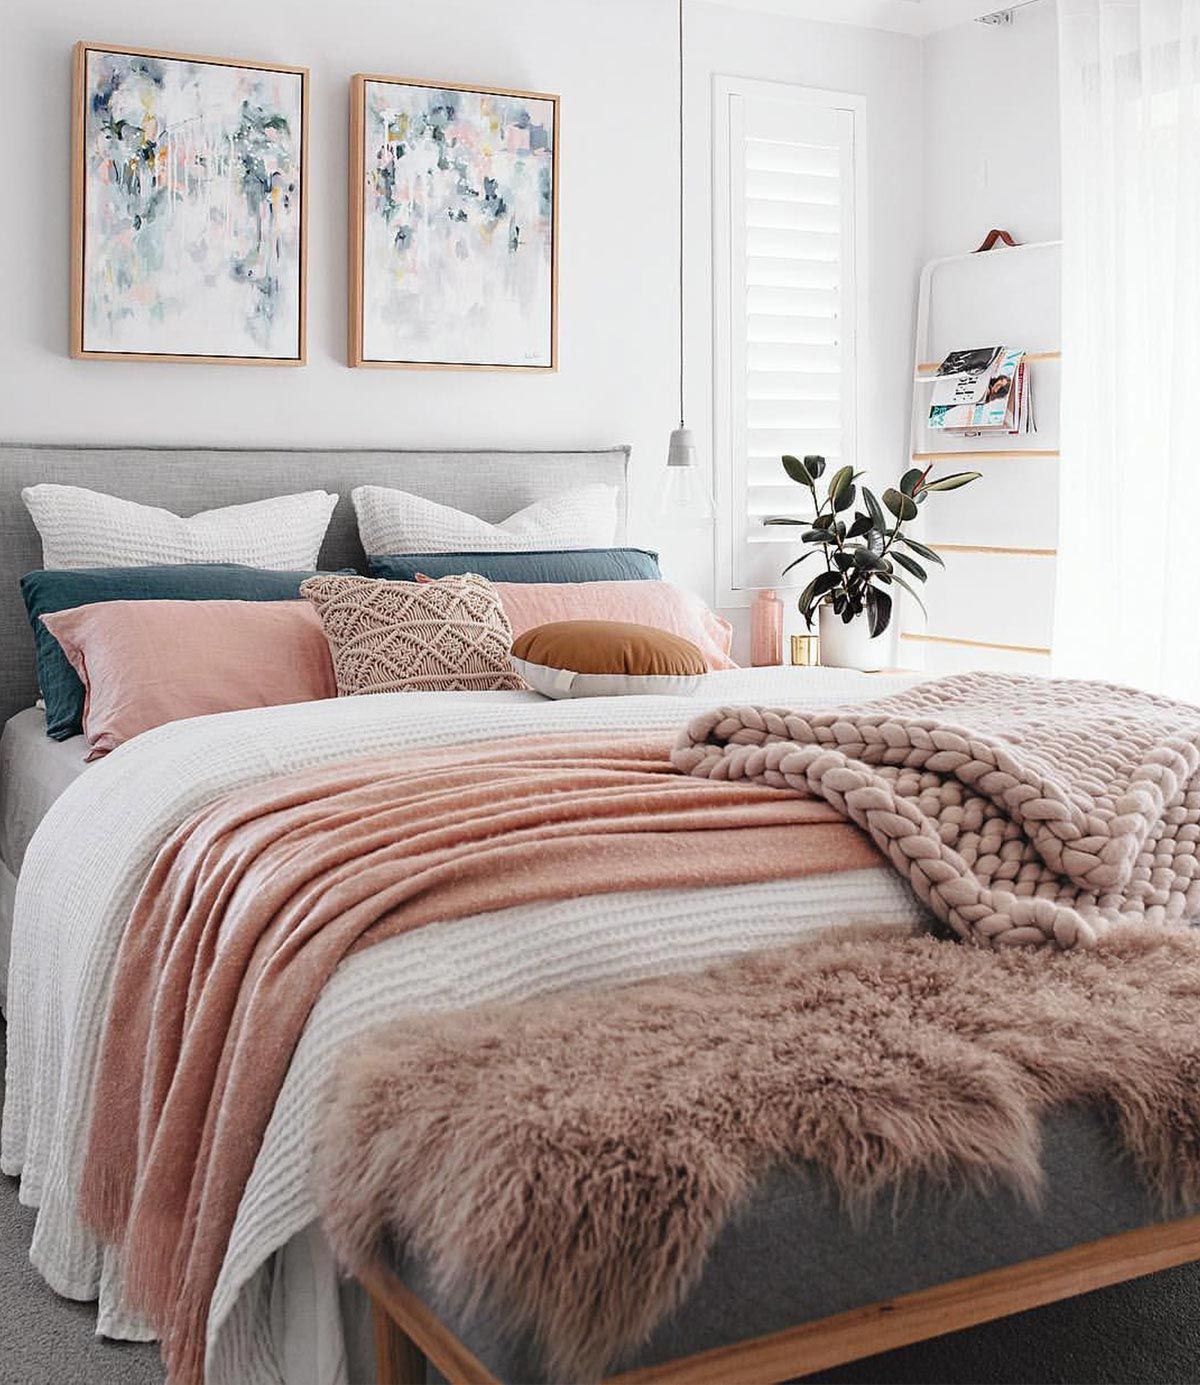 Phòng ngủ màu hồng pastel